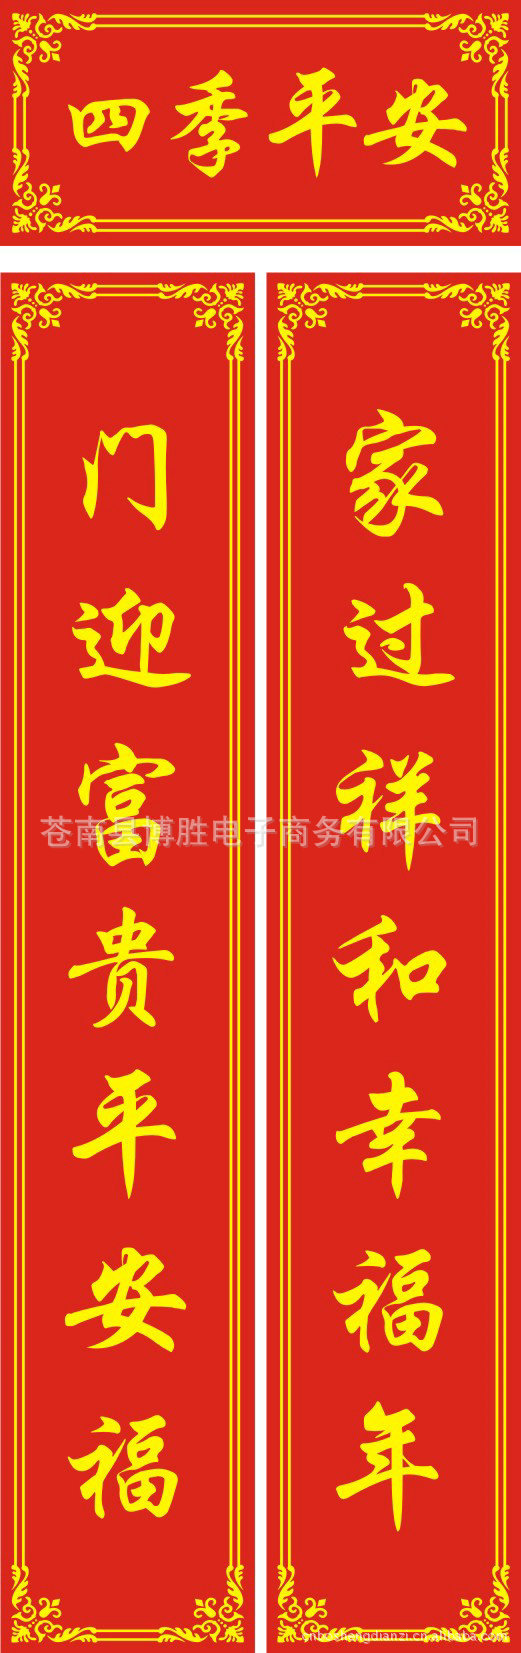 四季平安 大量供应 环保印刷 对联春联 喜联 广告可加印logo